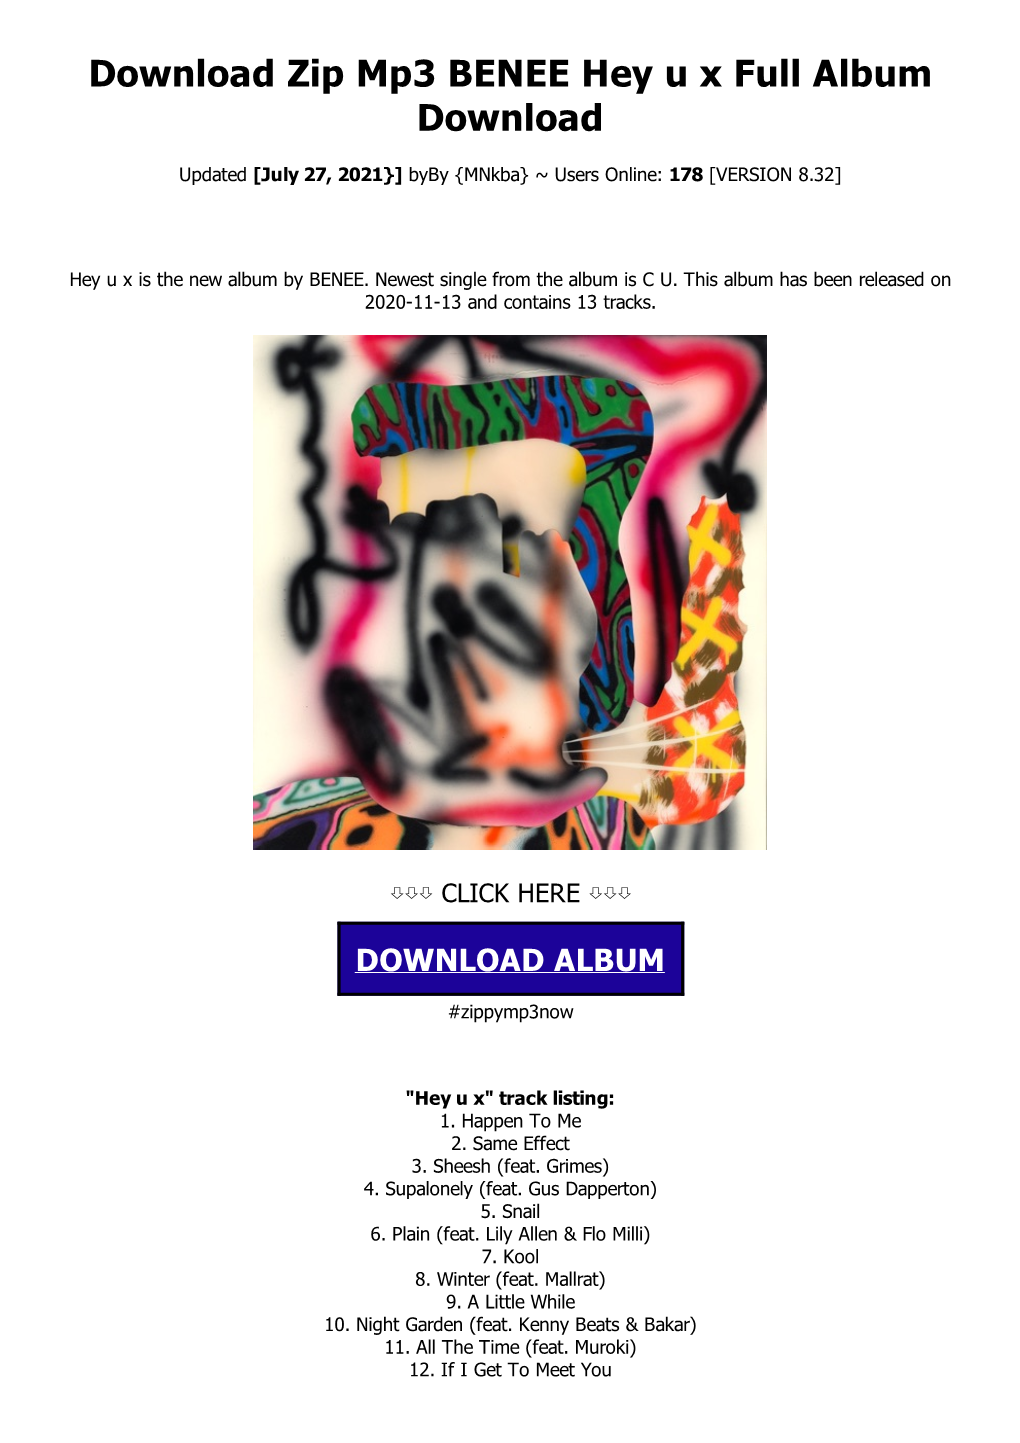 Download Zip Mp3 BENEE Hey U X Full Album Download